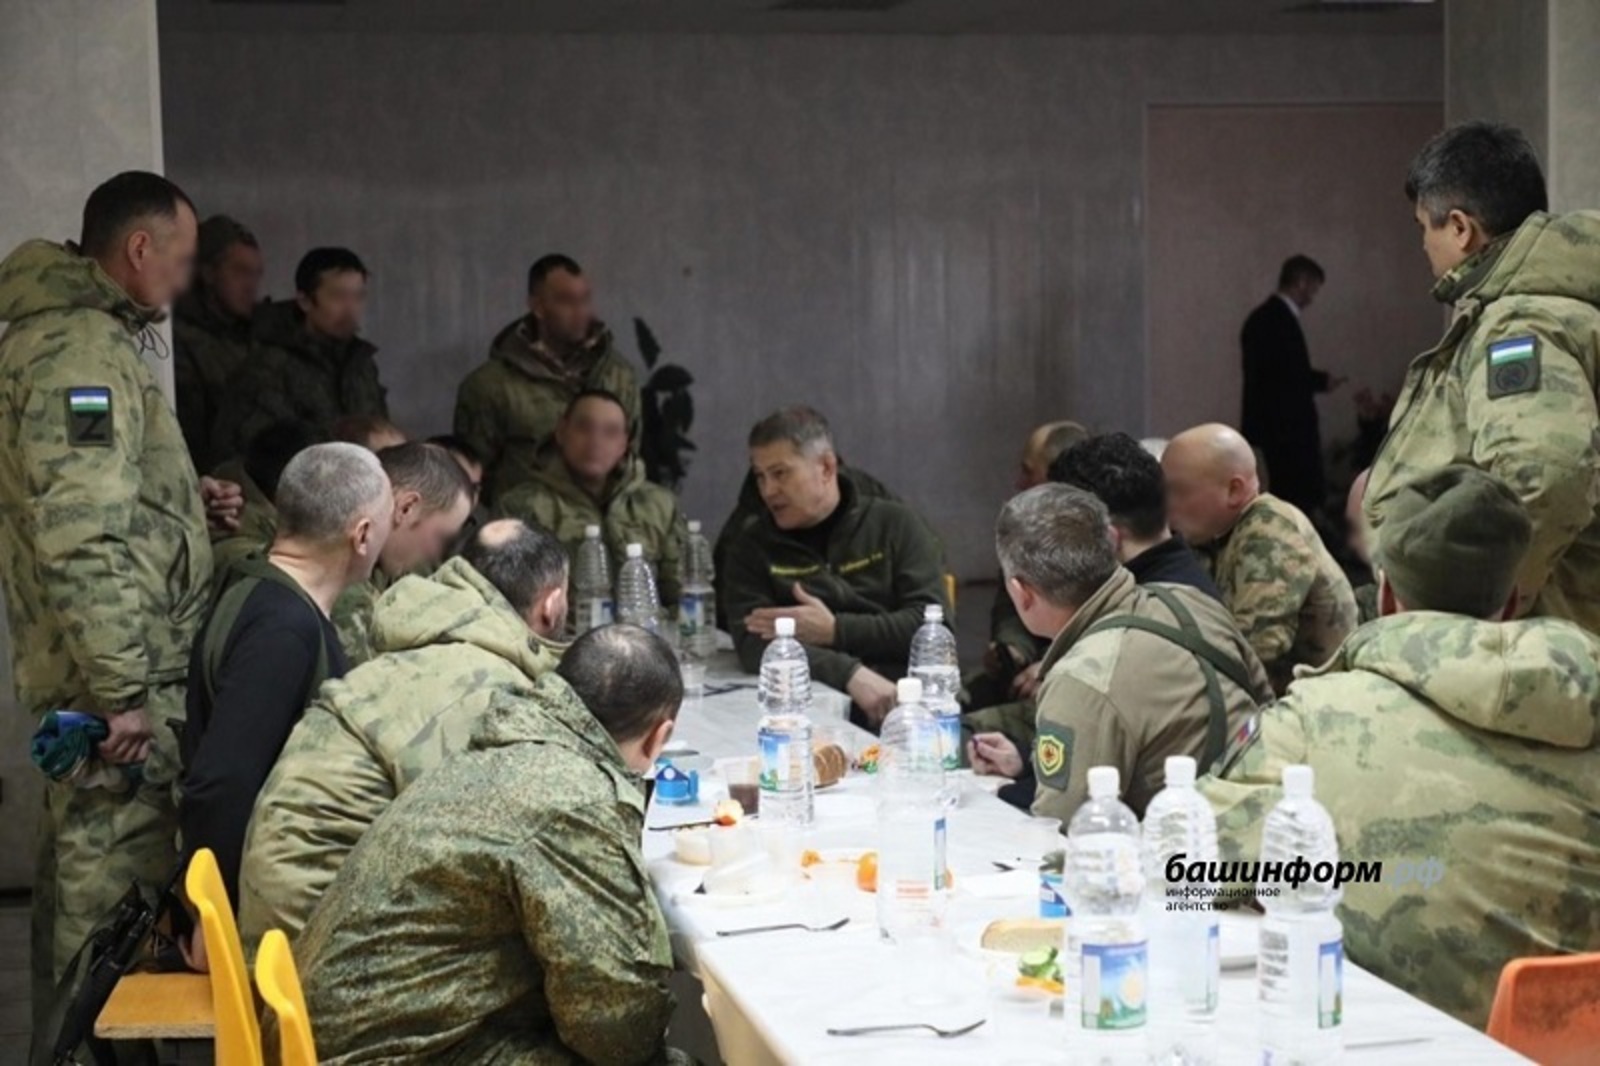 Эксперты оценили лидерские качества главы Башкирии, побывавшего в Донбассе